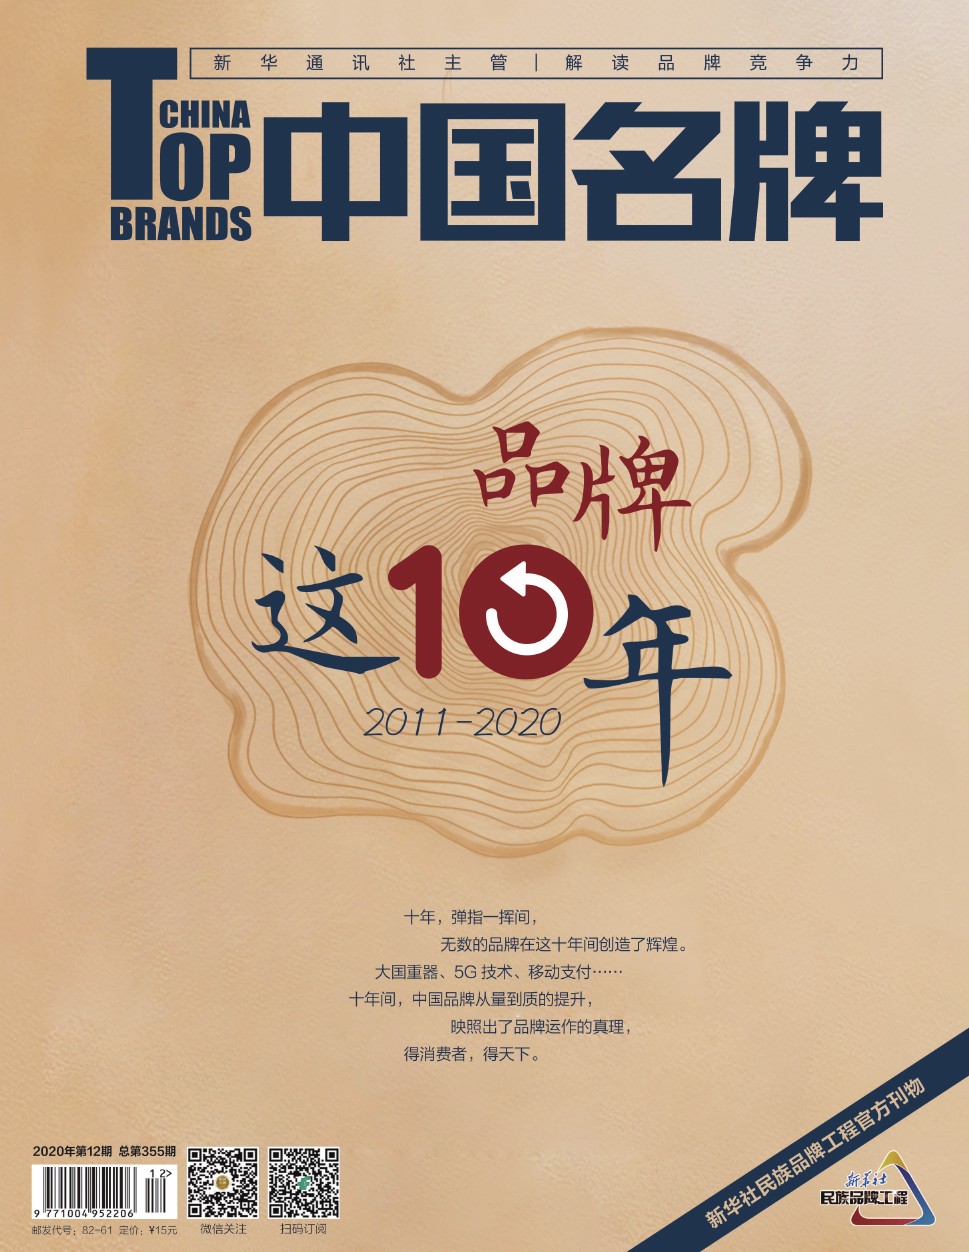 《中国名牌》电子杂志2020年第12期